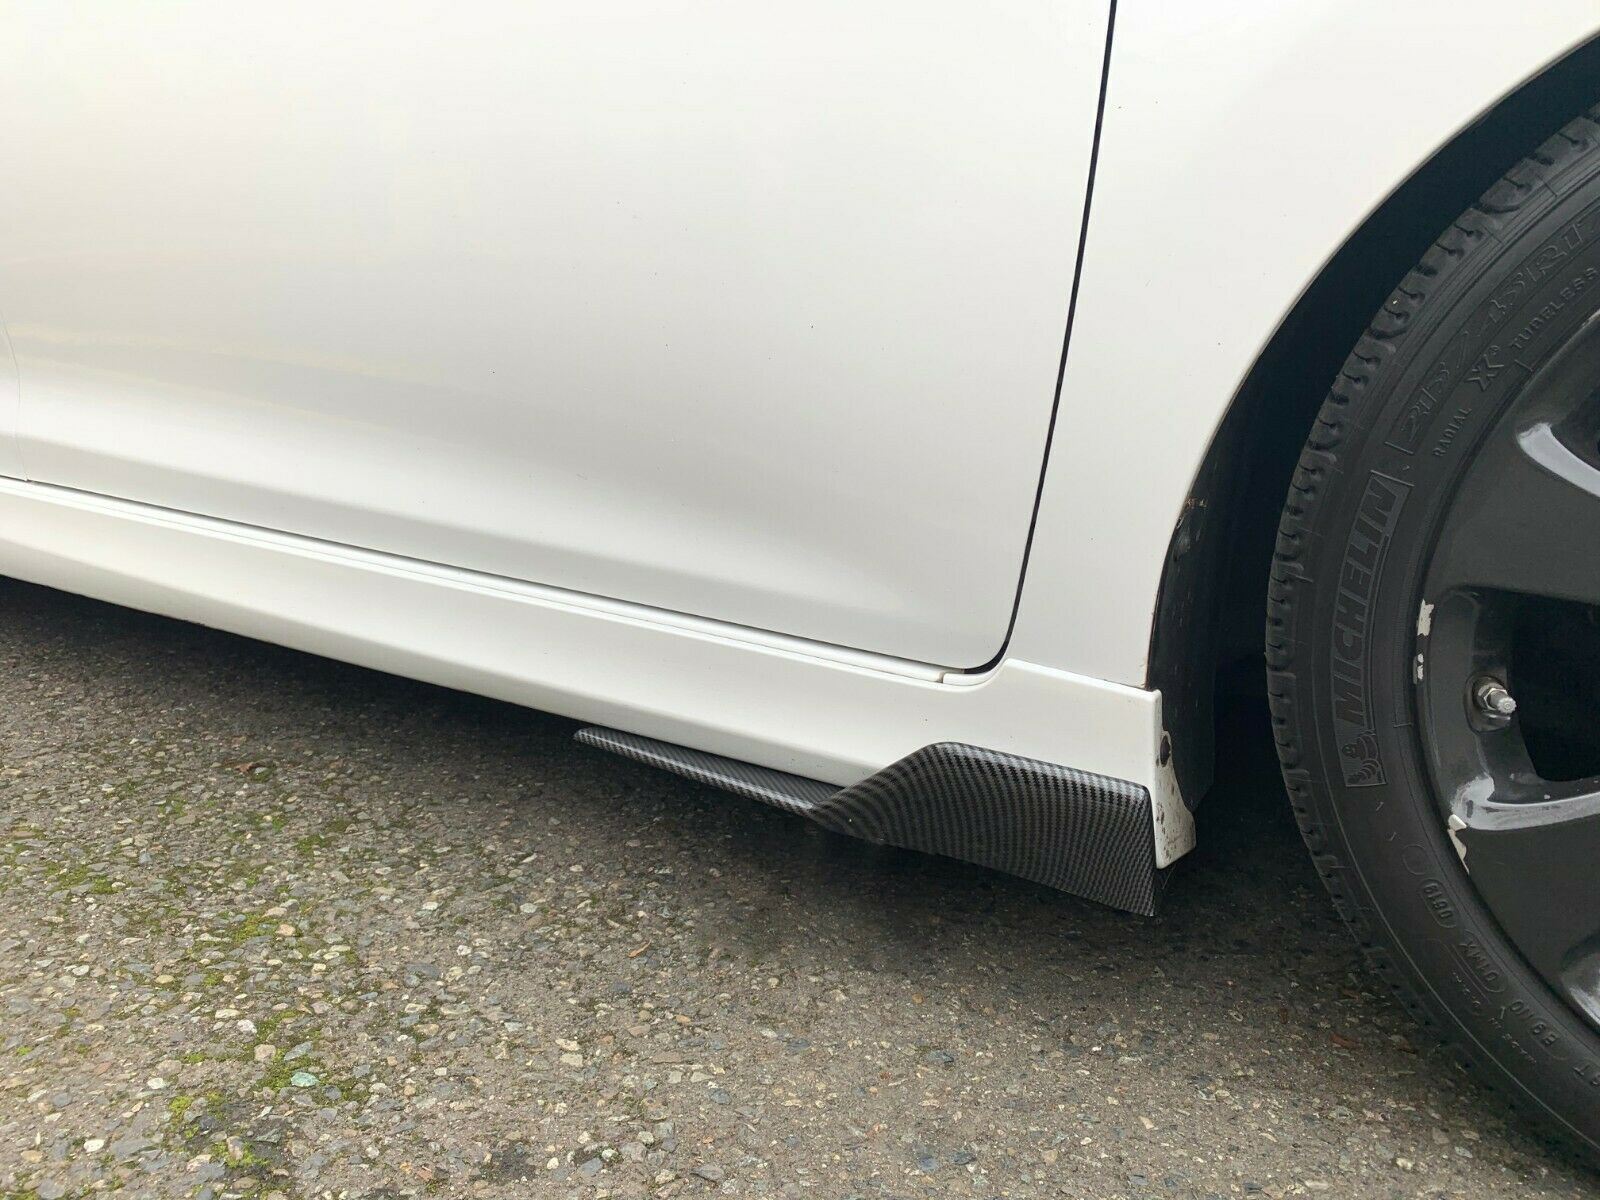 Side Skirt Splitter - Carbon Fiber Print  | Fits Mazda 3 ( 08-24 )